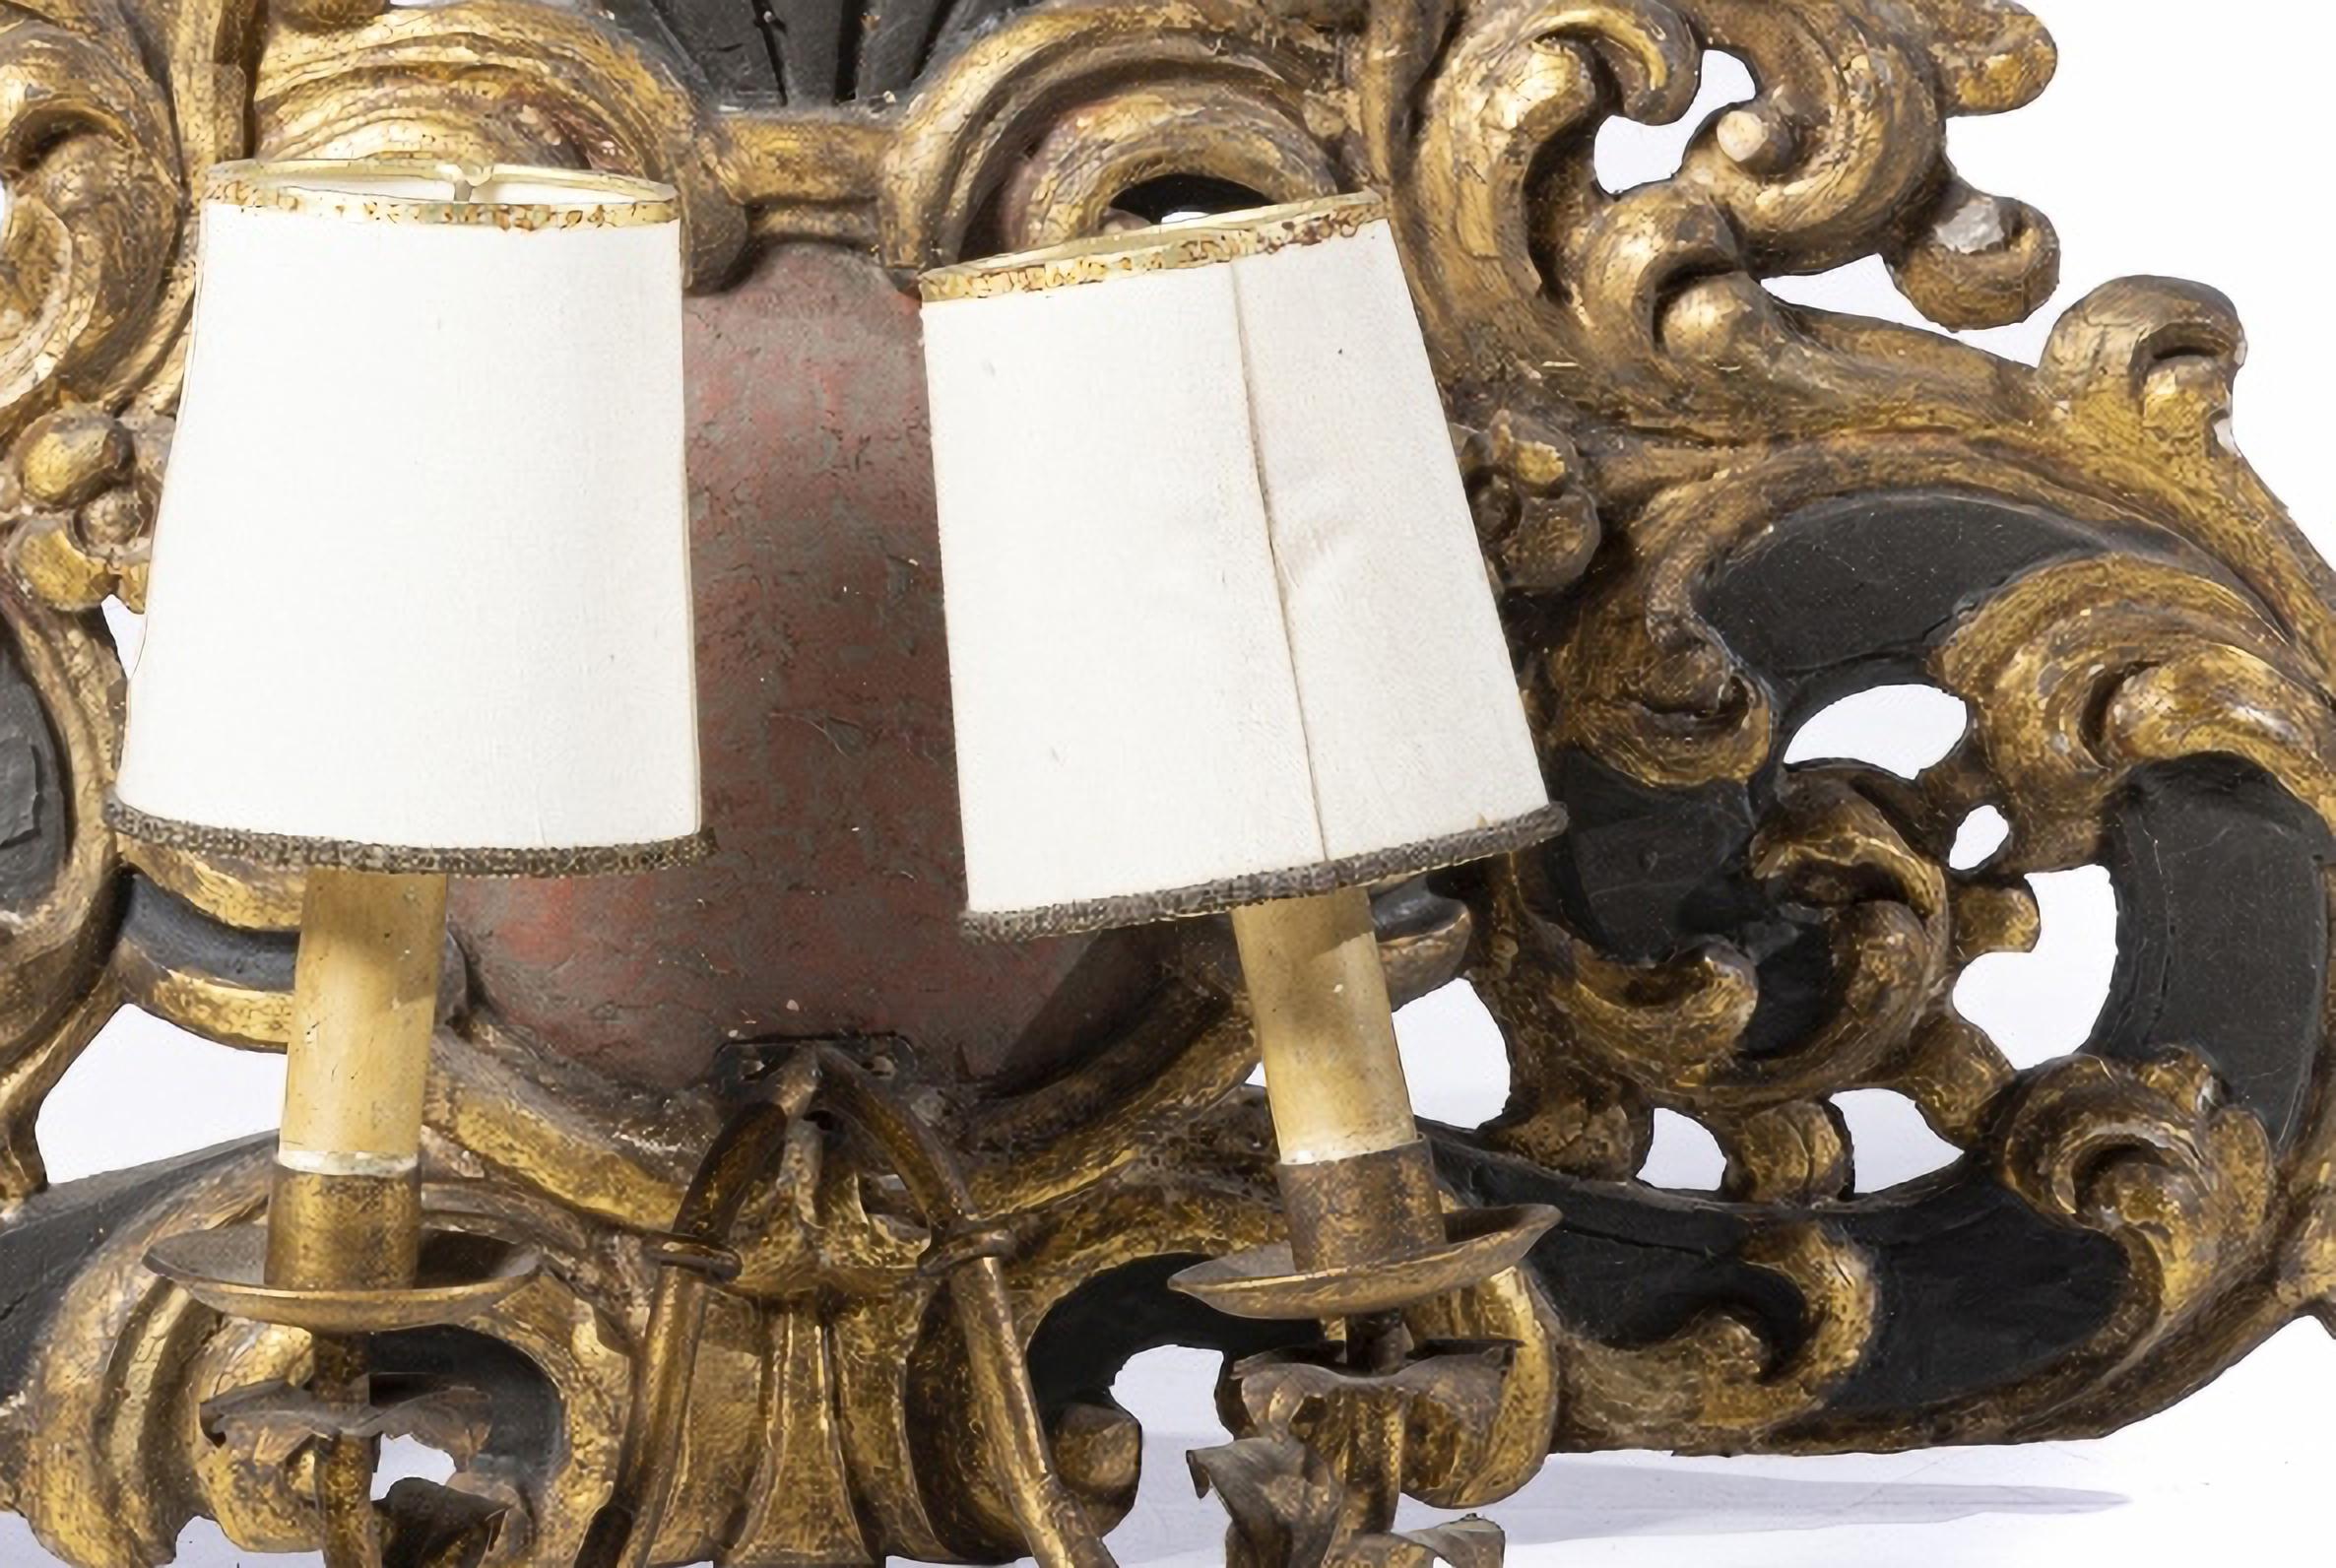 Paire d'appliques portugaises à deux lumières 18e siècle

refait à partir d'une sculpture peinte et dorée
décorées de motifs végétaux.
Applications métalliques.
Petits défauts.
Dimensions : 32 x 53 cm
de bonnes conditions.